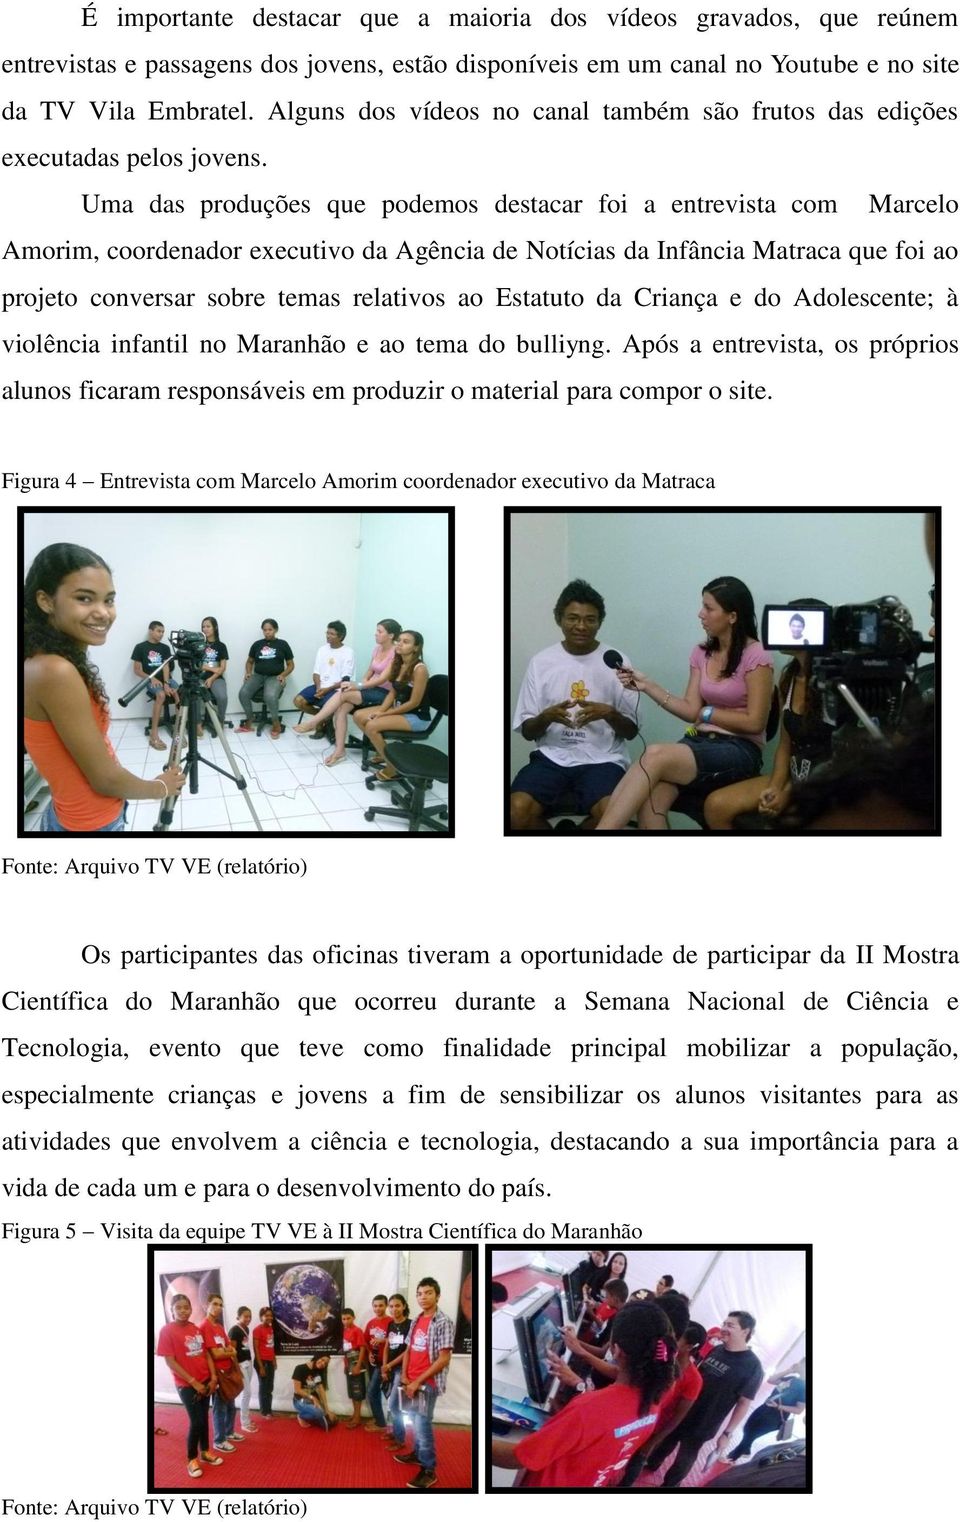 Uma das produções que podemos destacar foi a entrevista com Marcelo Amorim, coordenador executivo da Agência de Notícias da Infância Matraca que foi ao projeto conversar sobre temas relativos ao